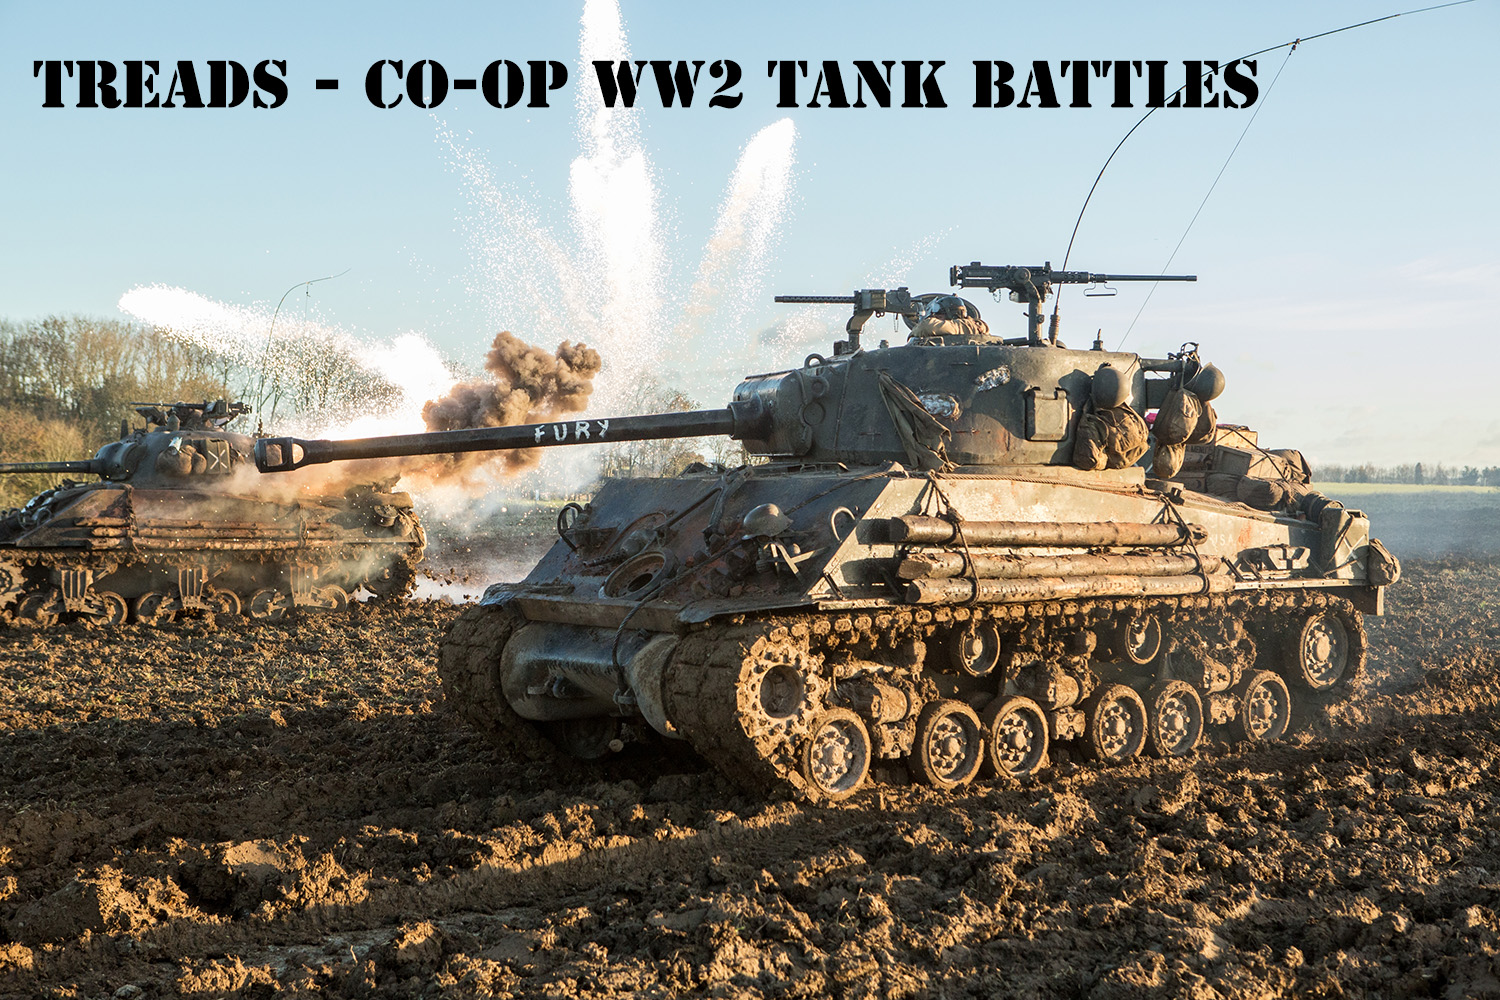 TREADS: Co-op WW2 Tank Battles